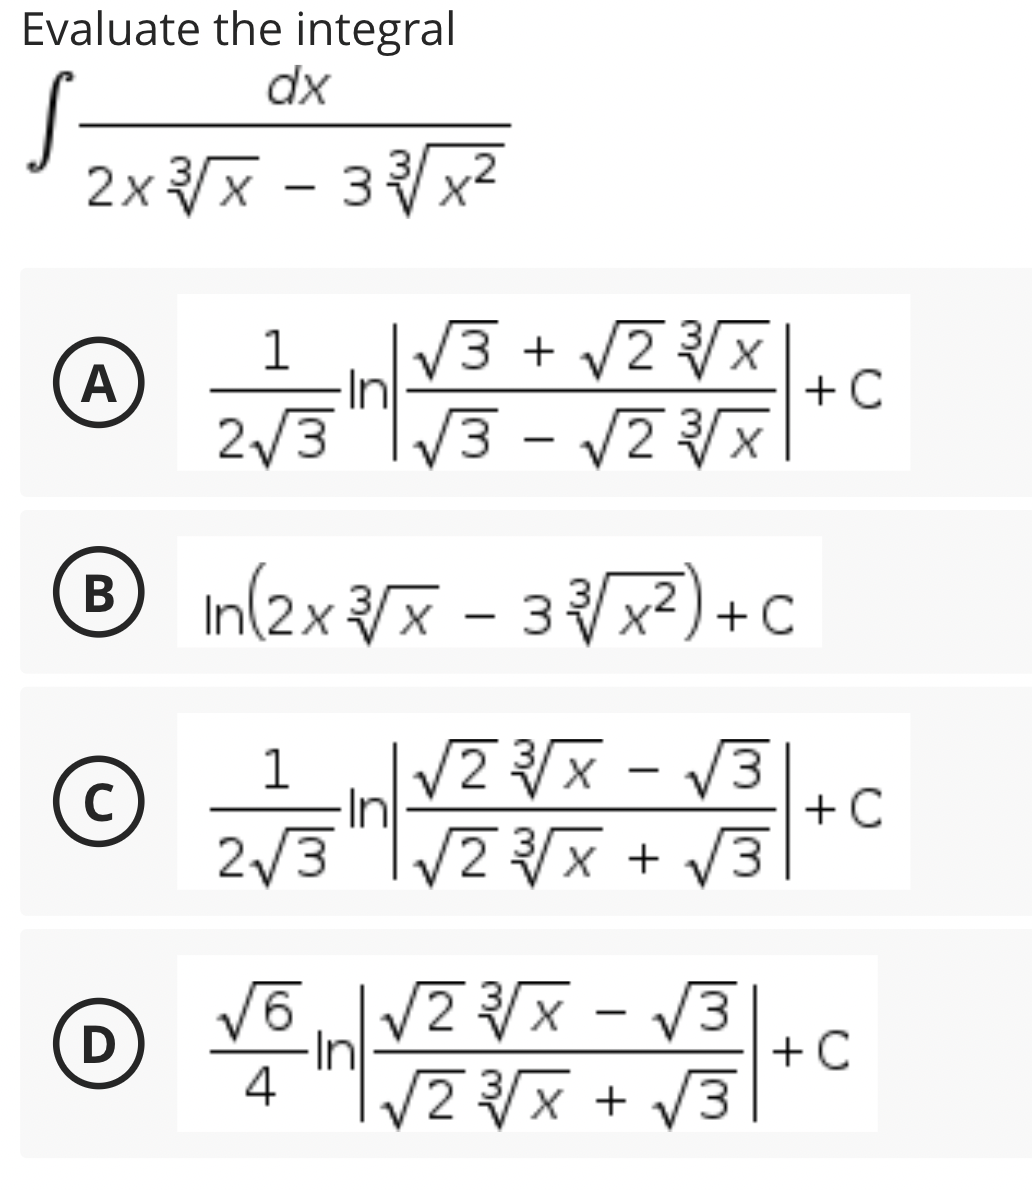 Evaluate the integral
dx
2xx - 3x2
1
/3 + V2
In
A
+C
2/3 "I/3 - V7
|
® In(2x /x - 3x)+c
|
|
C
In
+ C
2/3
V2x + V3
V6V2x - 3
In
4
2x +
D
+ C
